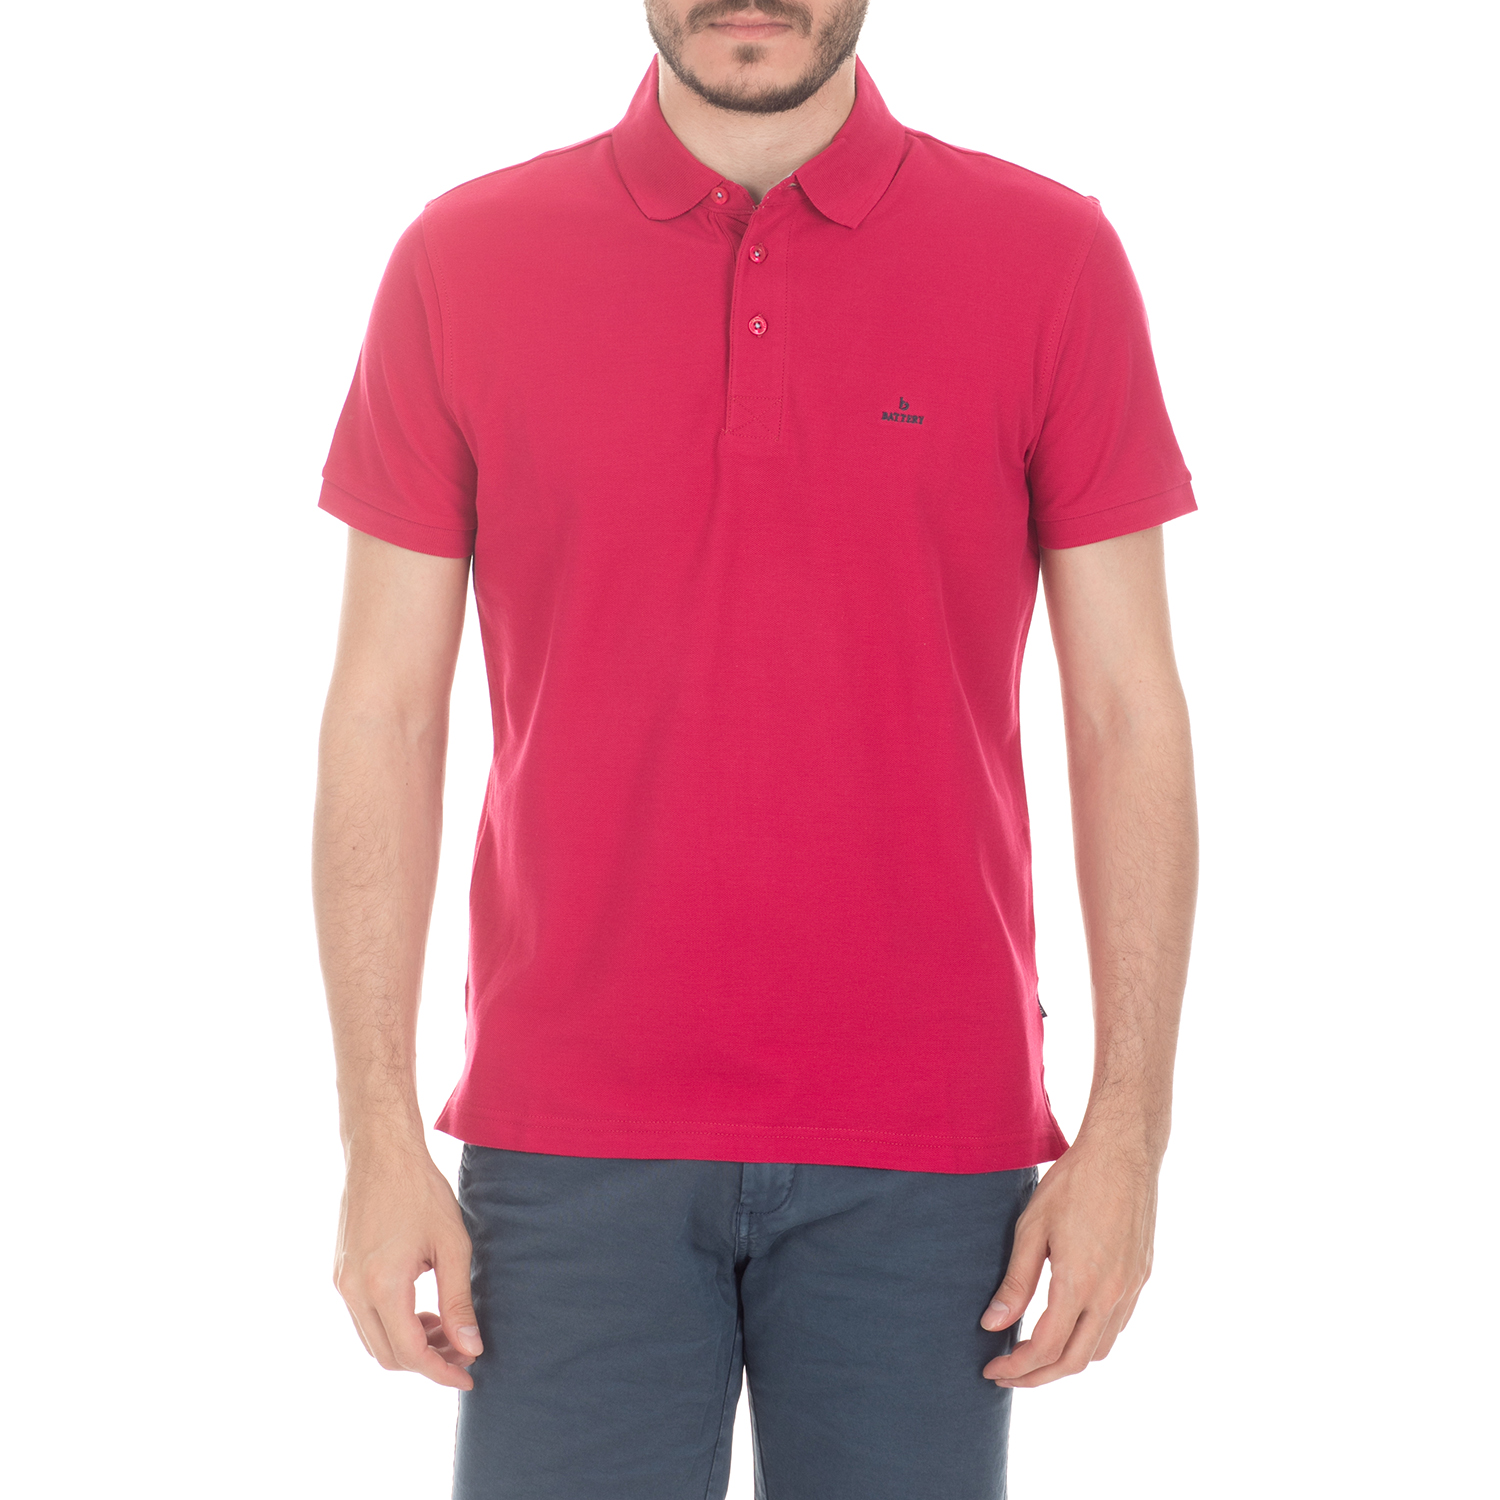 BATTERY - Ανδρική μπλούζα BATTERY κόκκινη Ανδρικά/Ρούχα/Μπλούζες/Πόλο